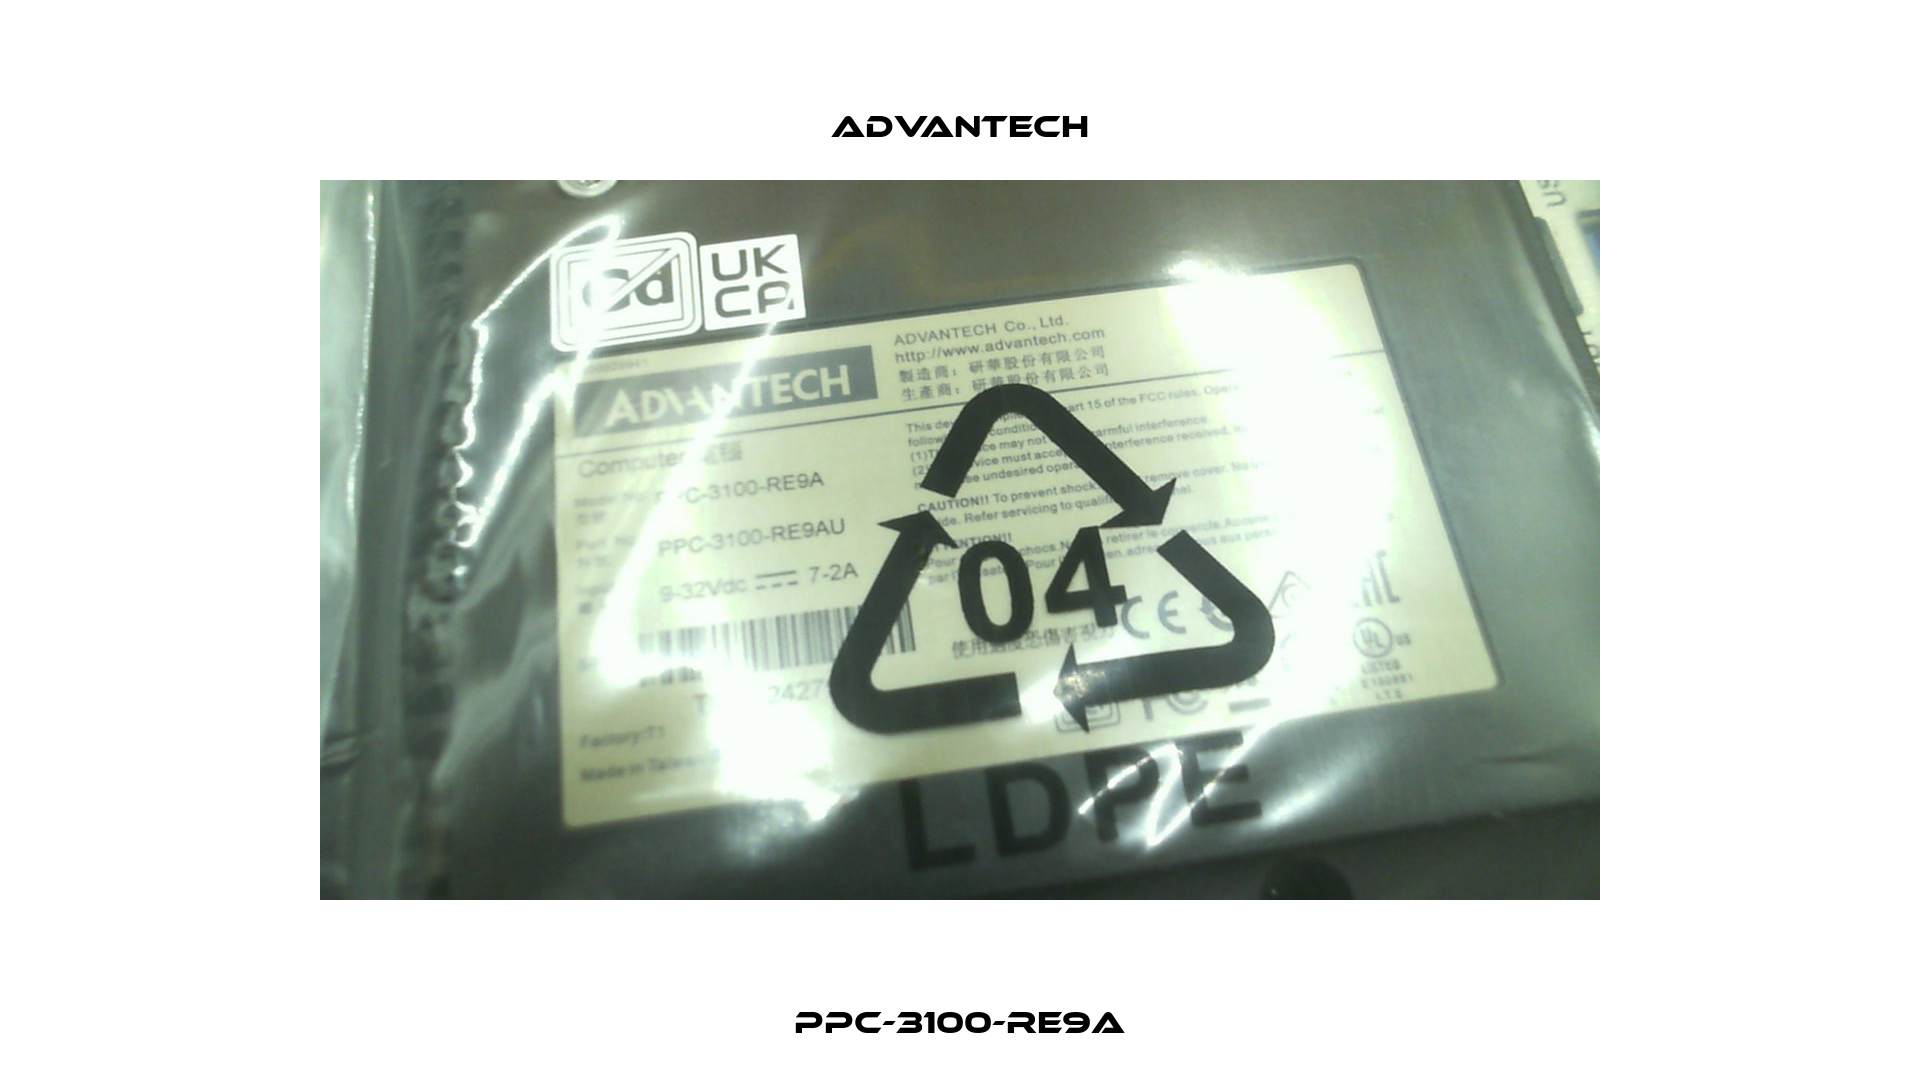 PPC-3100-RE9A Advantech